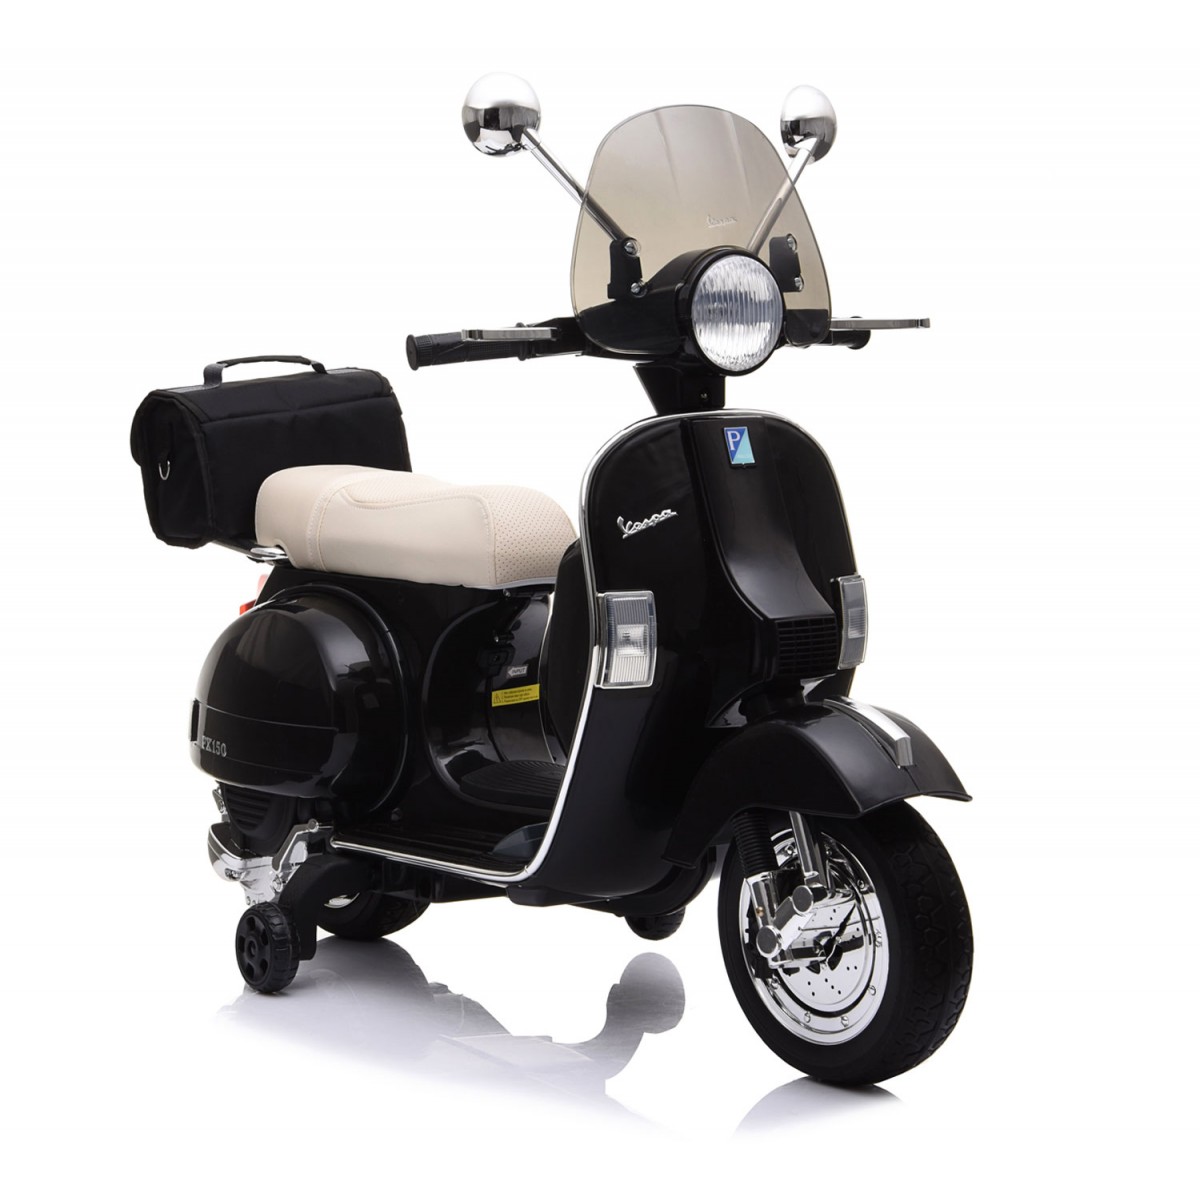 Piaggio Vespa Sprint Nera Moto Elettrica da Bambino 12V Scooter a